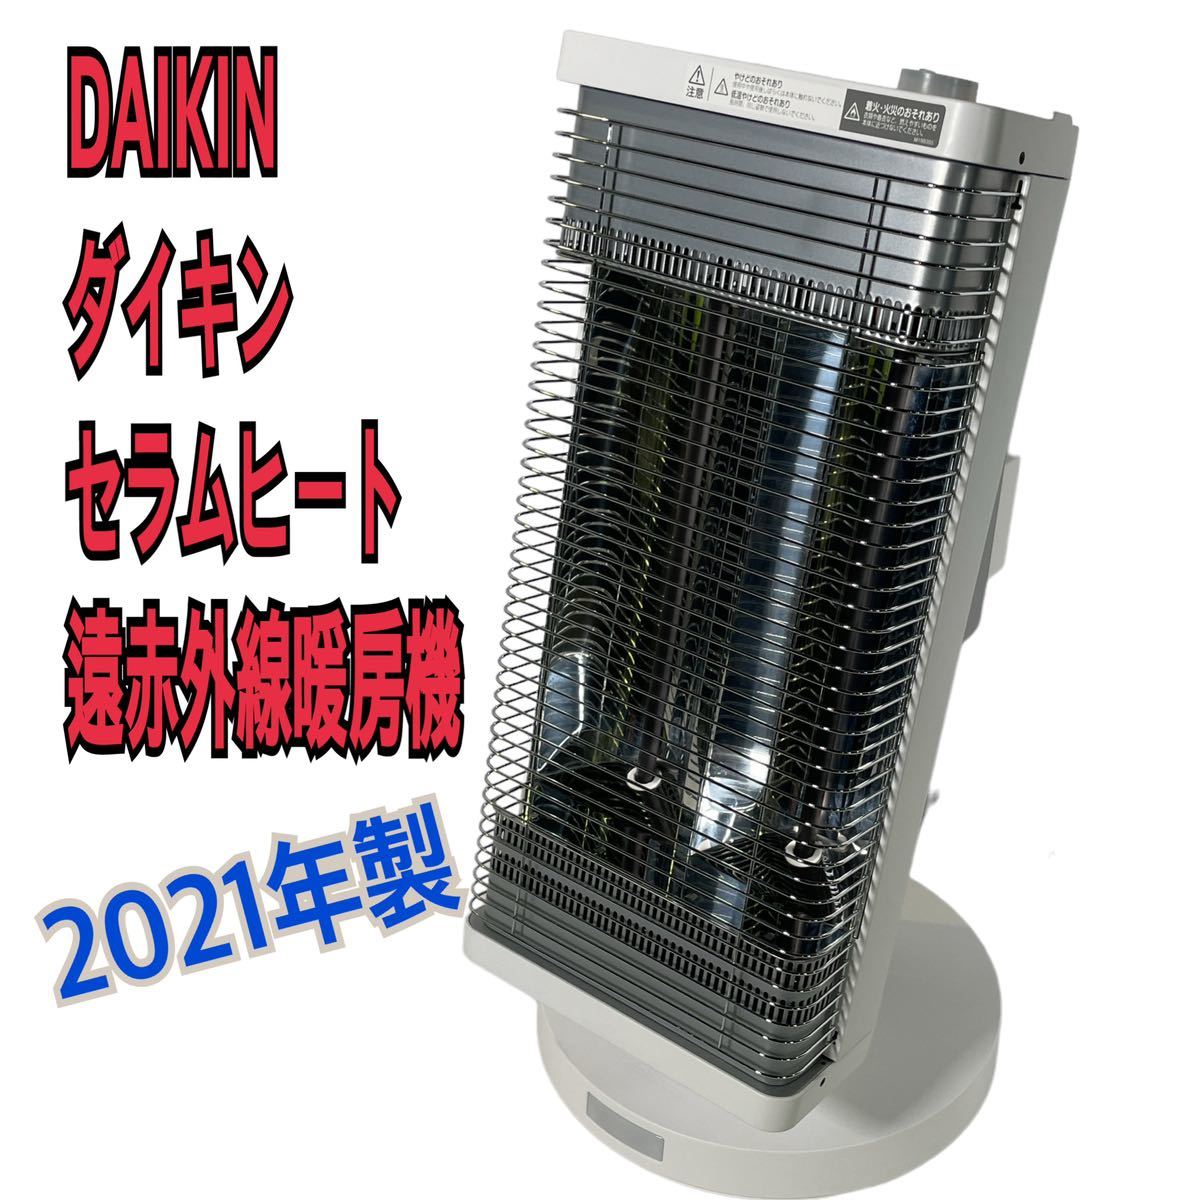 2021年製 DAIKIN ダイキン セラムヒート 遠赤外線暖房機 ERFT11YS-W